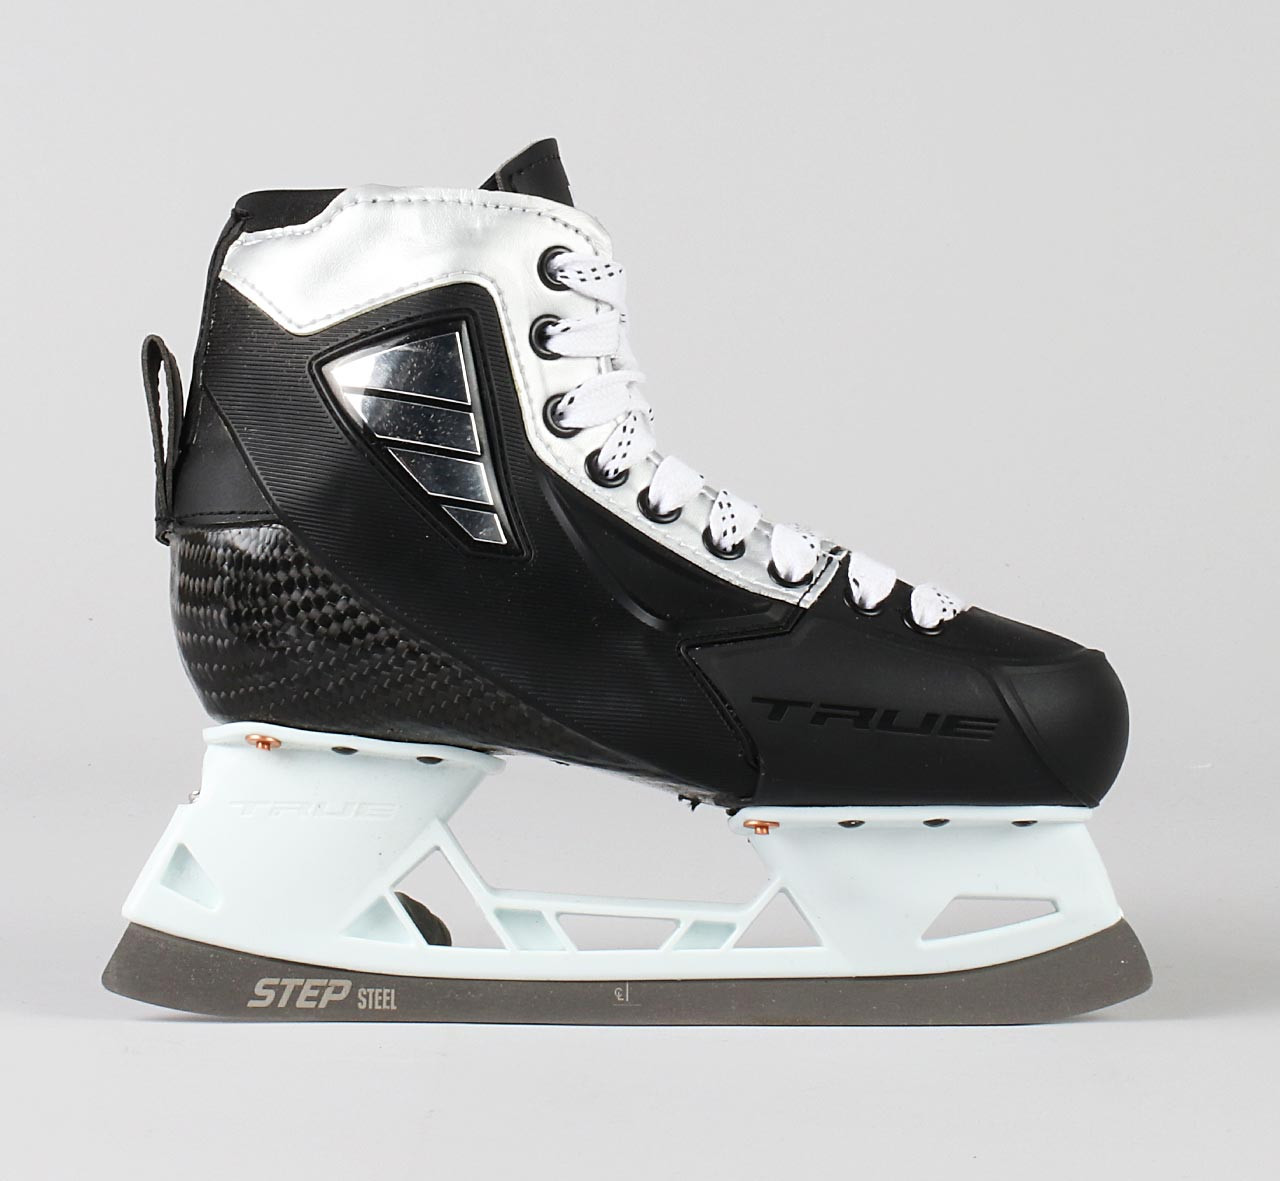 Size 5 / 5 - TRUE Custom Goalie Skates - Pro Stock Hockey